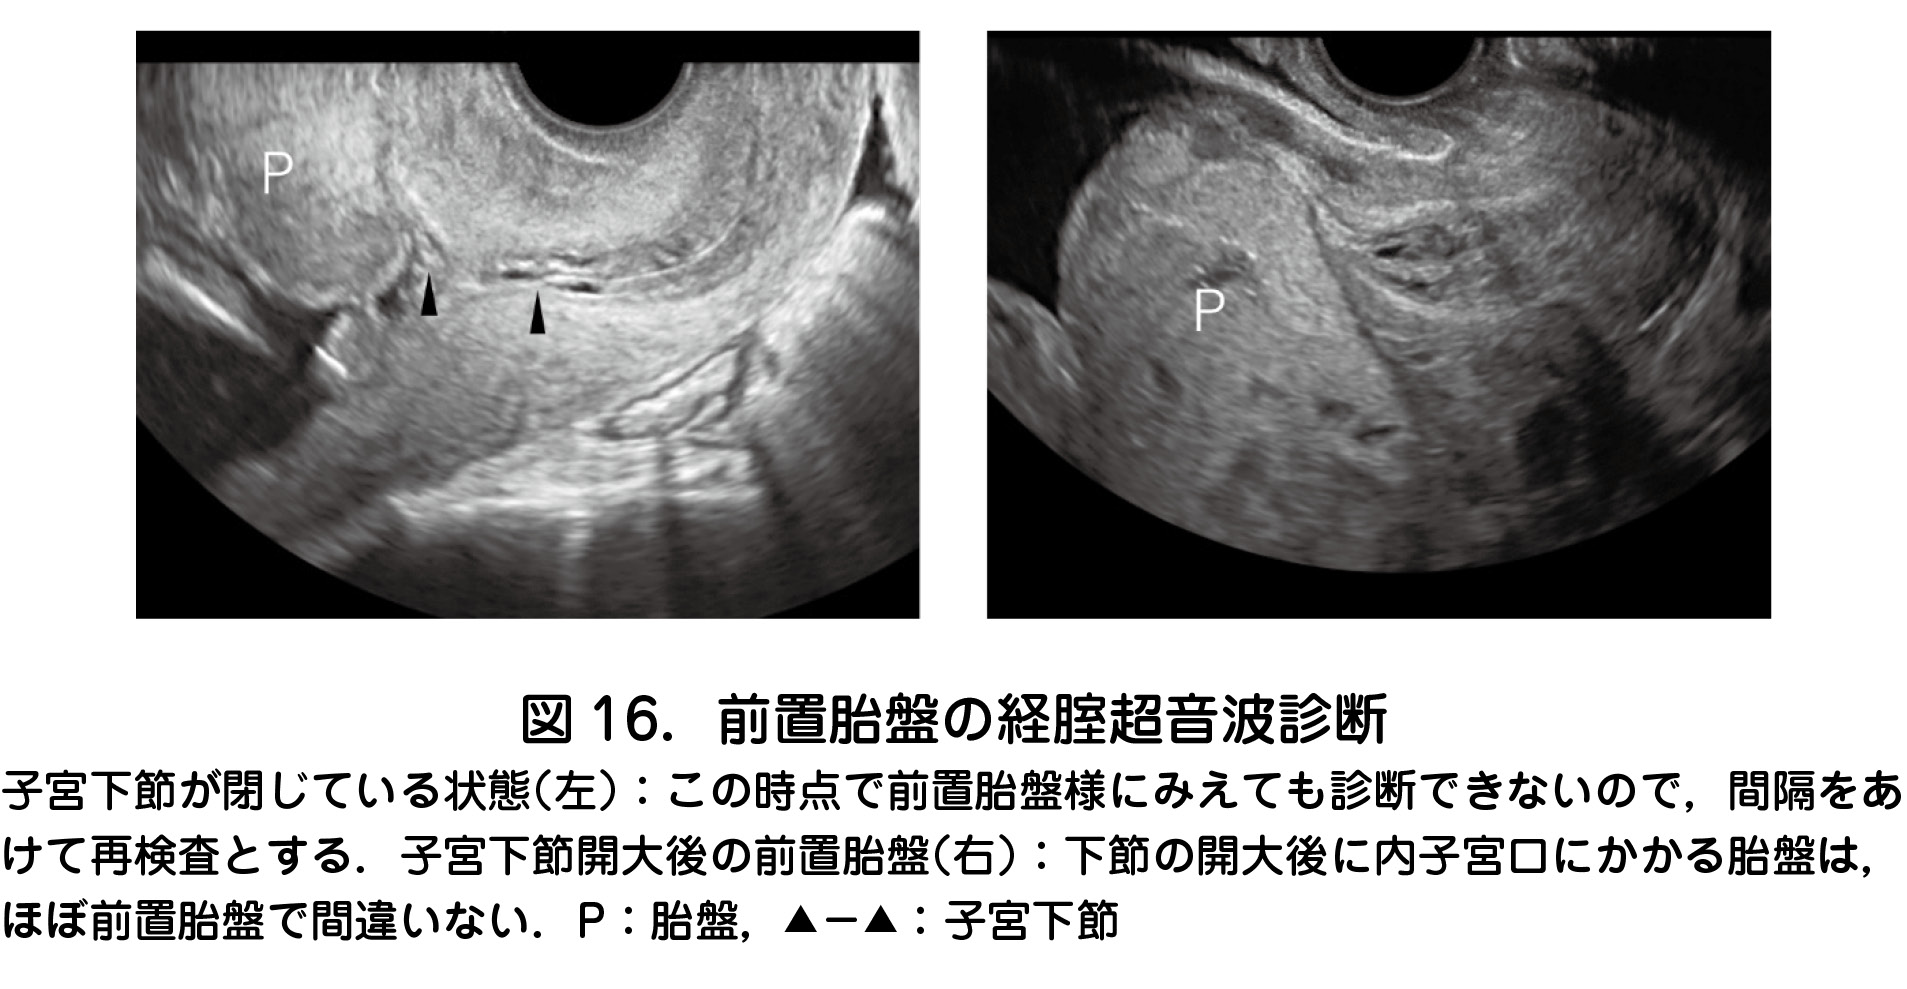 2 前置胎盤 癒着胎盤 日本産婦人科医会